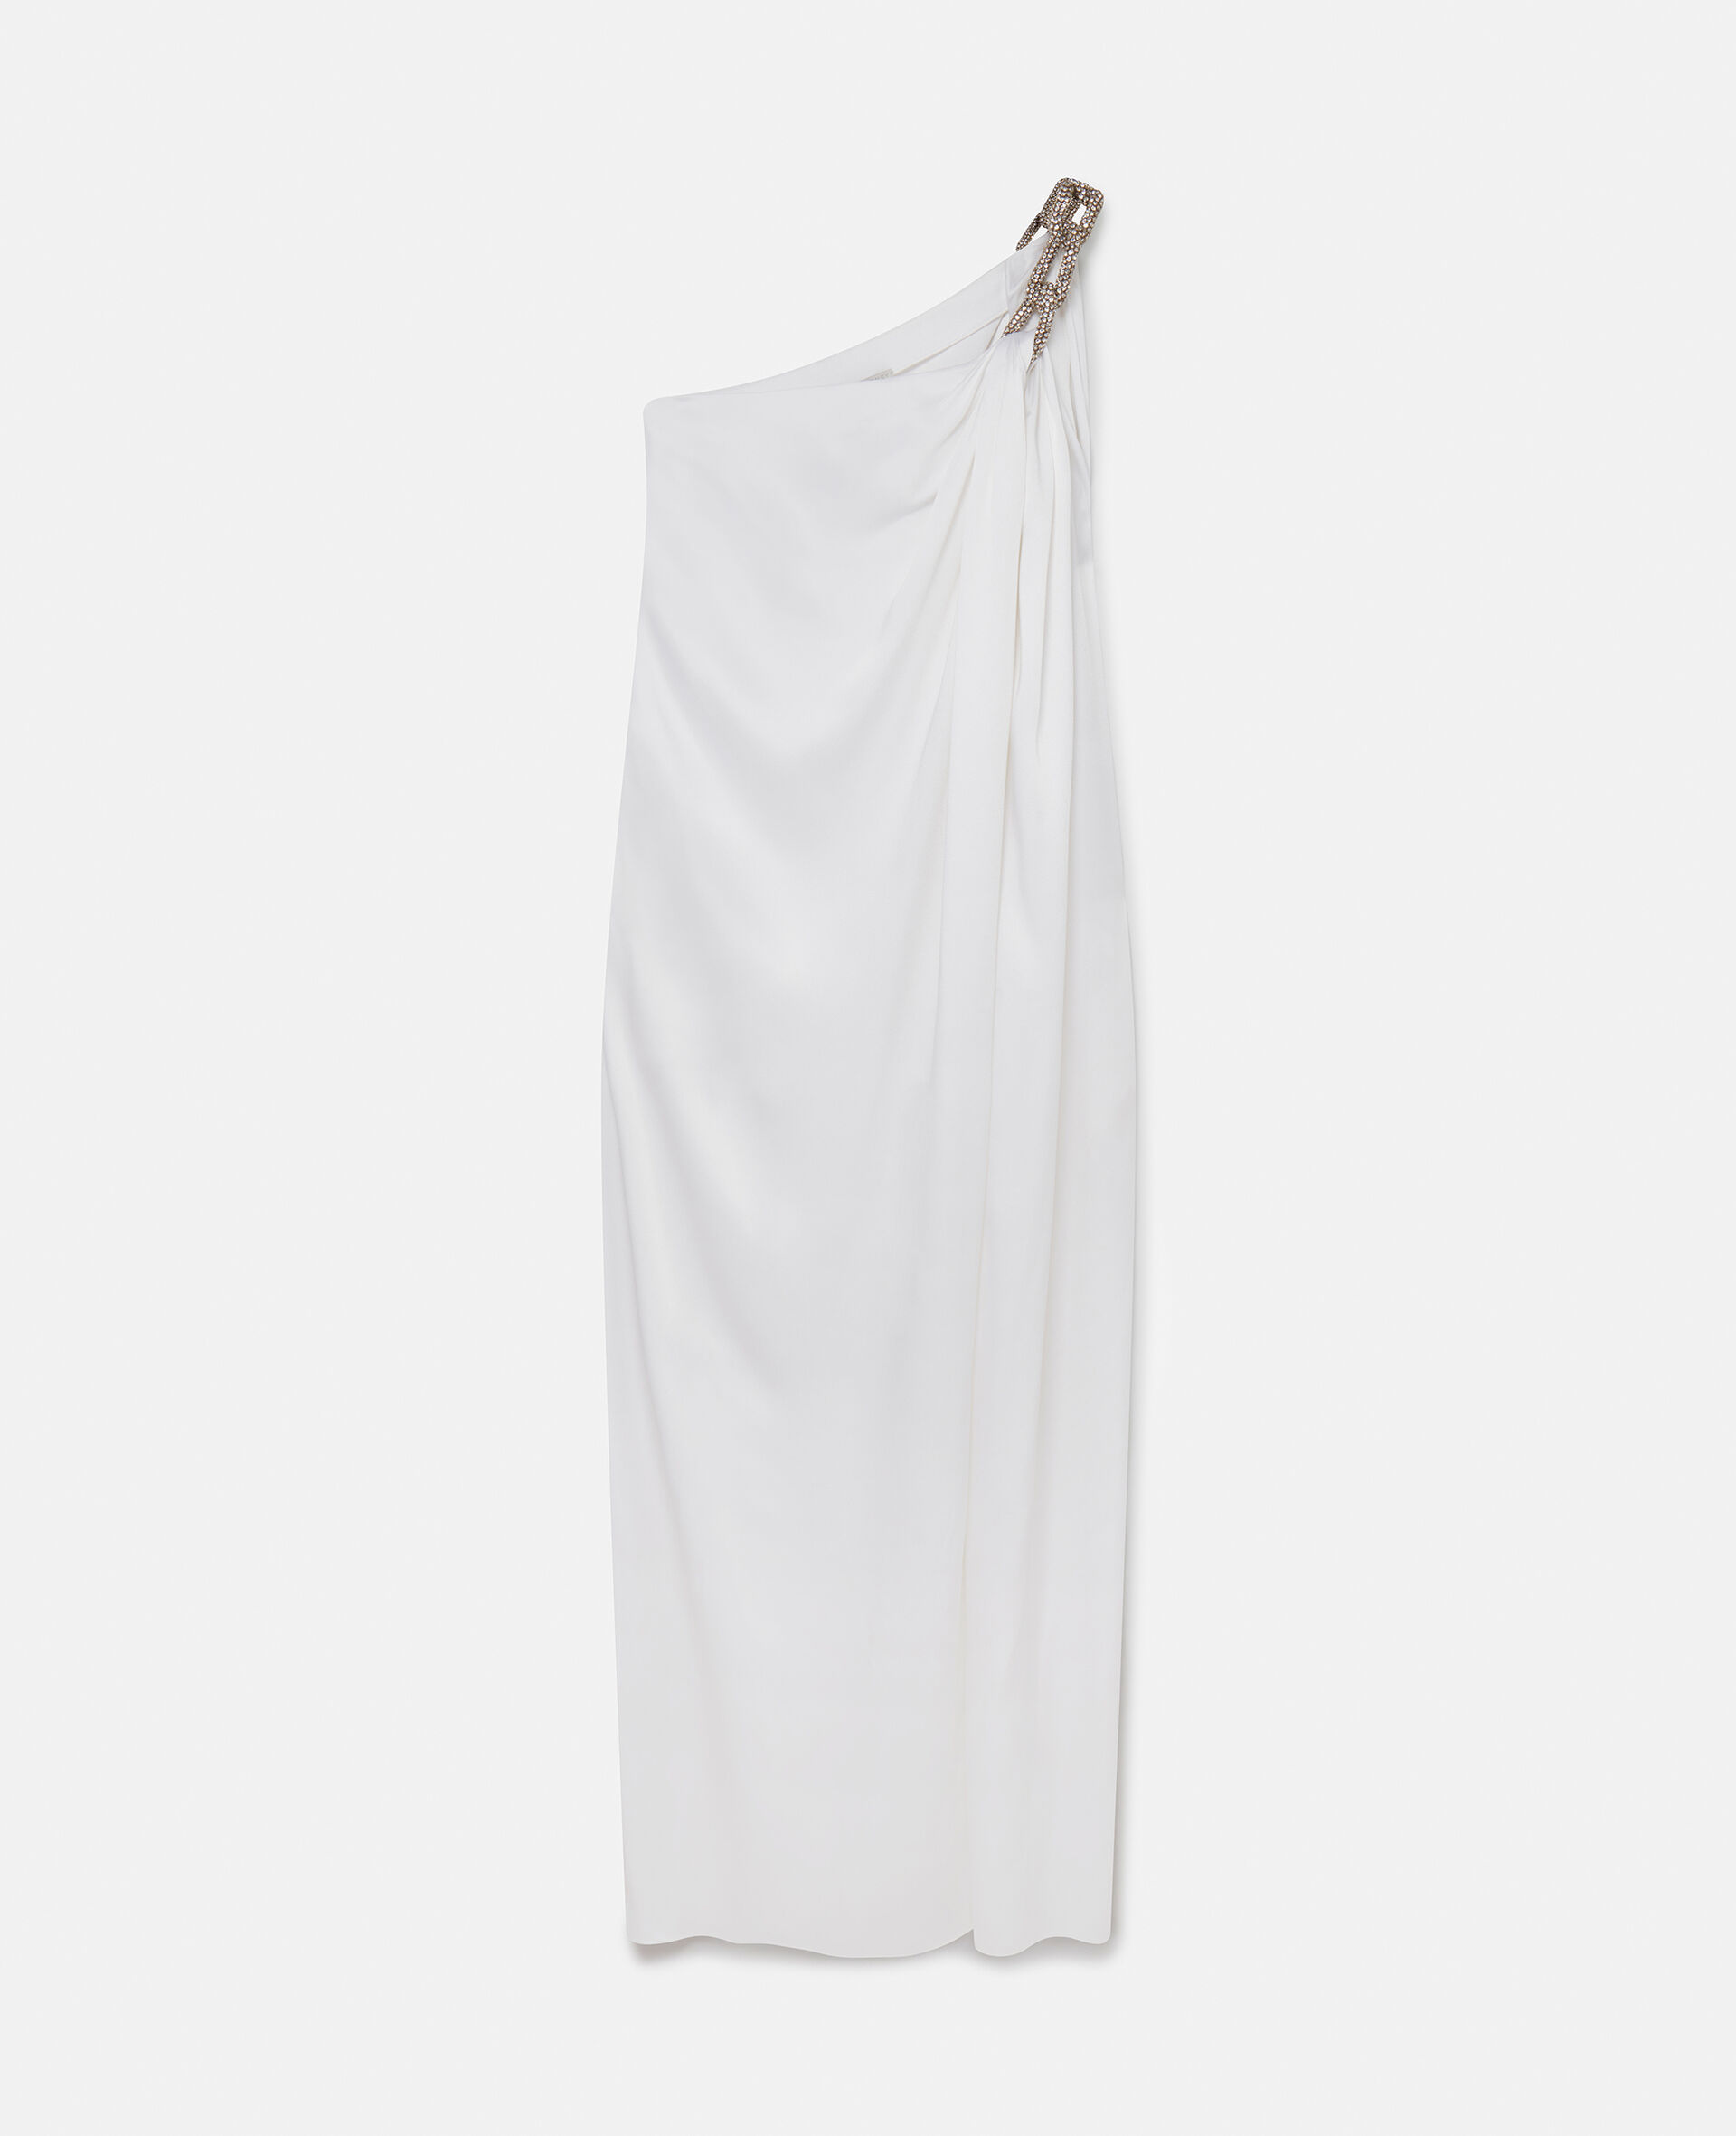 Robe asymetrique en double satin avec chaine en cristaux Falabella-Blanc-medium